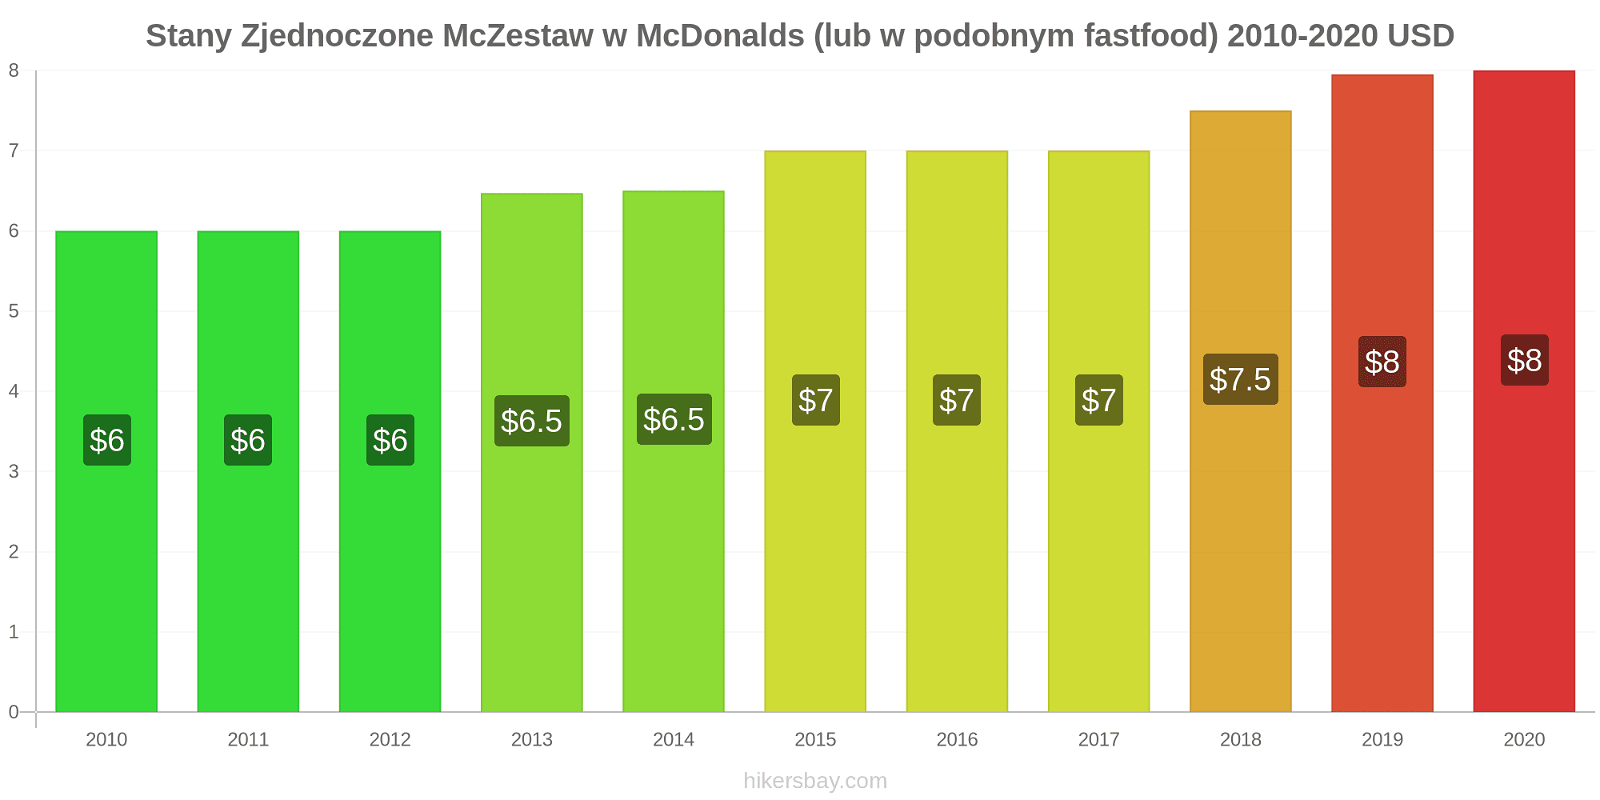 Stany Zjednoczone zmiany cen McZestaw w McDonalds (lub w podobnym fastfood) hikersbay.com